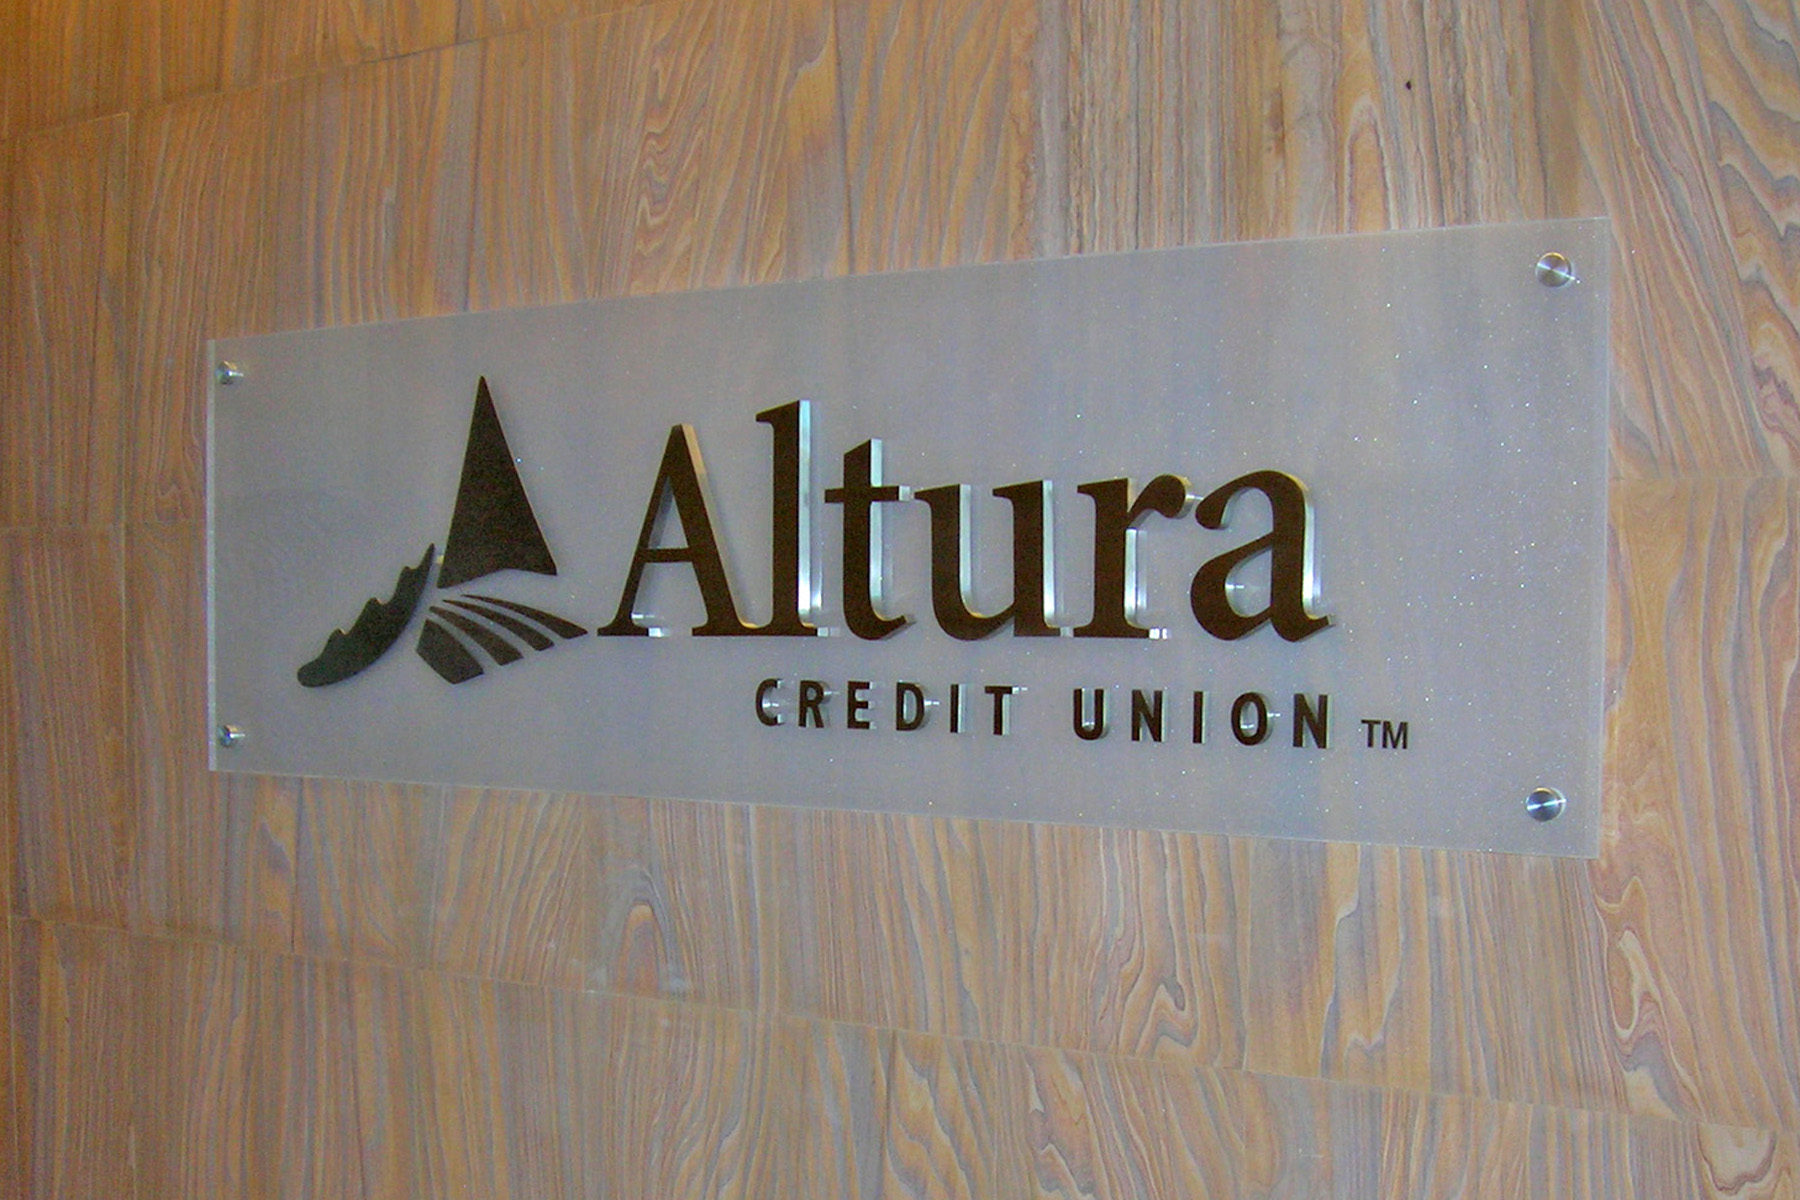 Altura Credit Union corporate reception sign